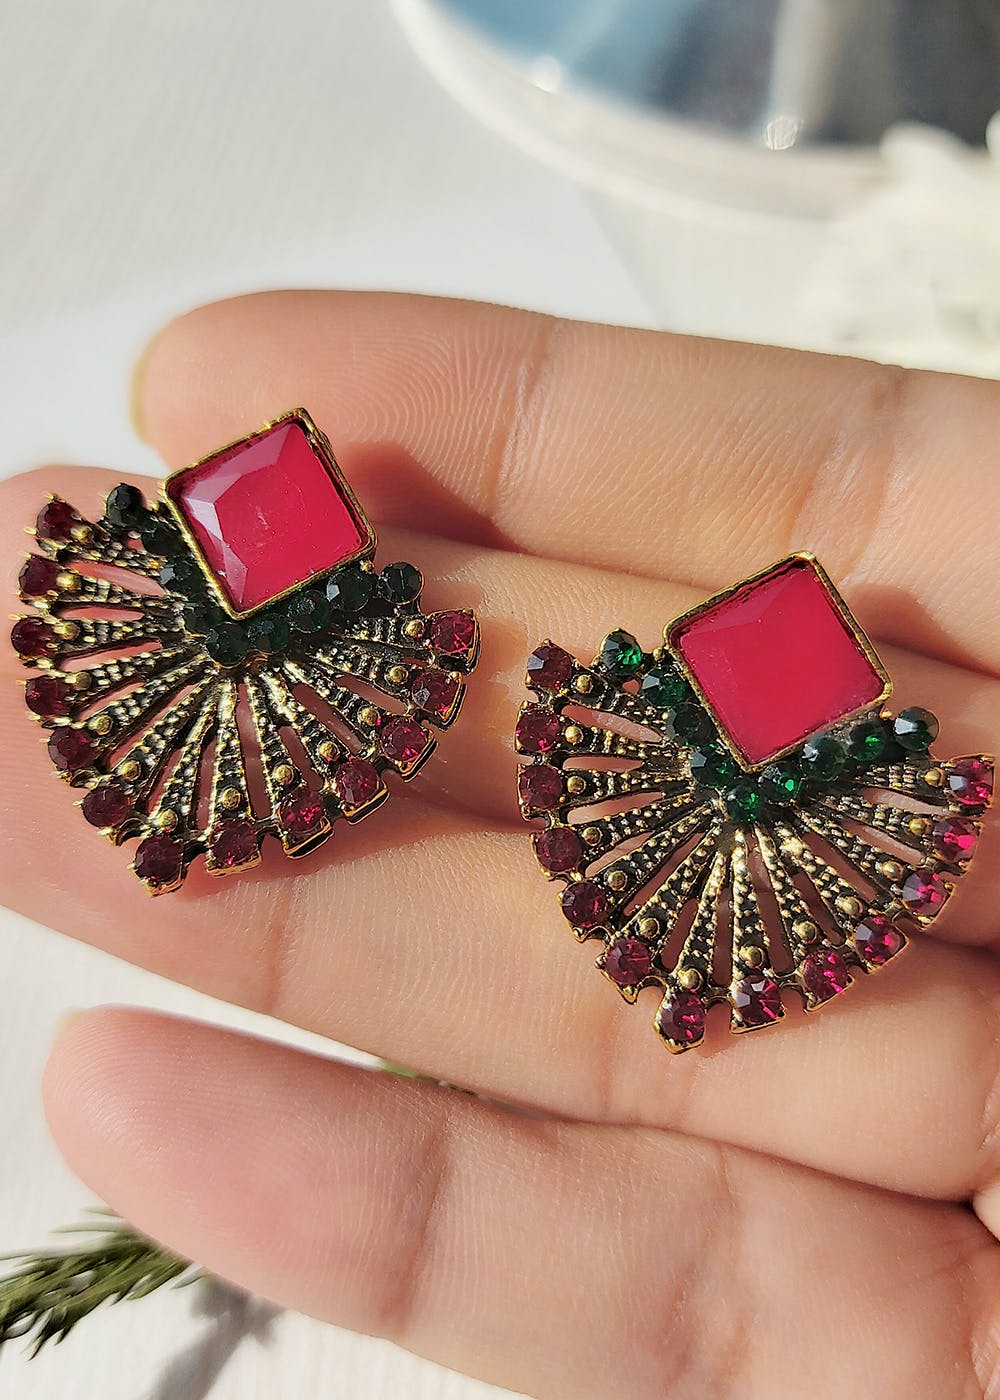 Buy Elegant Green Stone Flower Design Gold Plated Stud Earrings Online